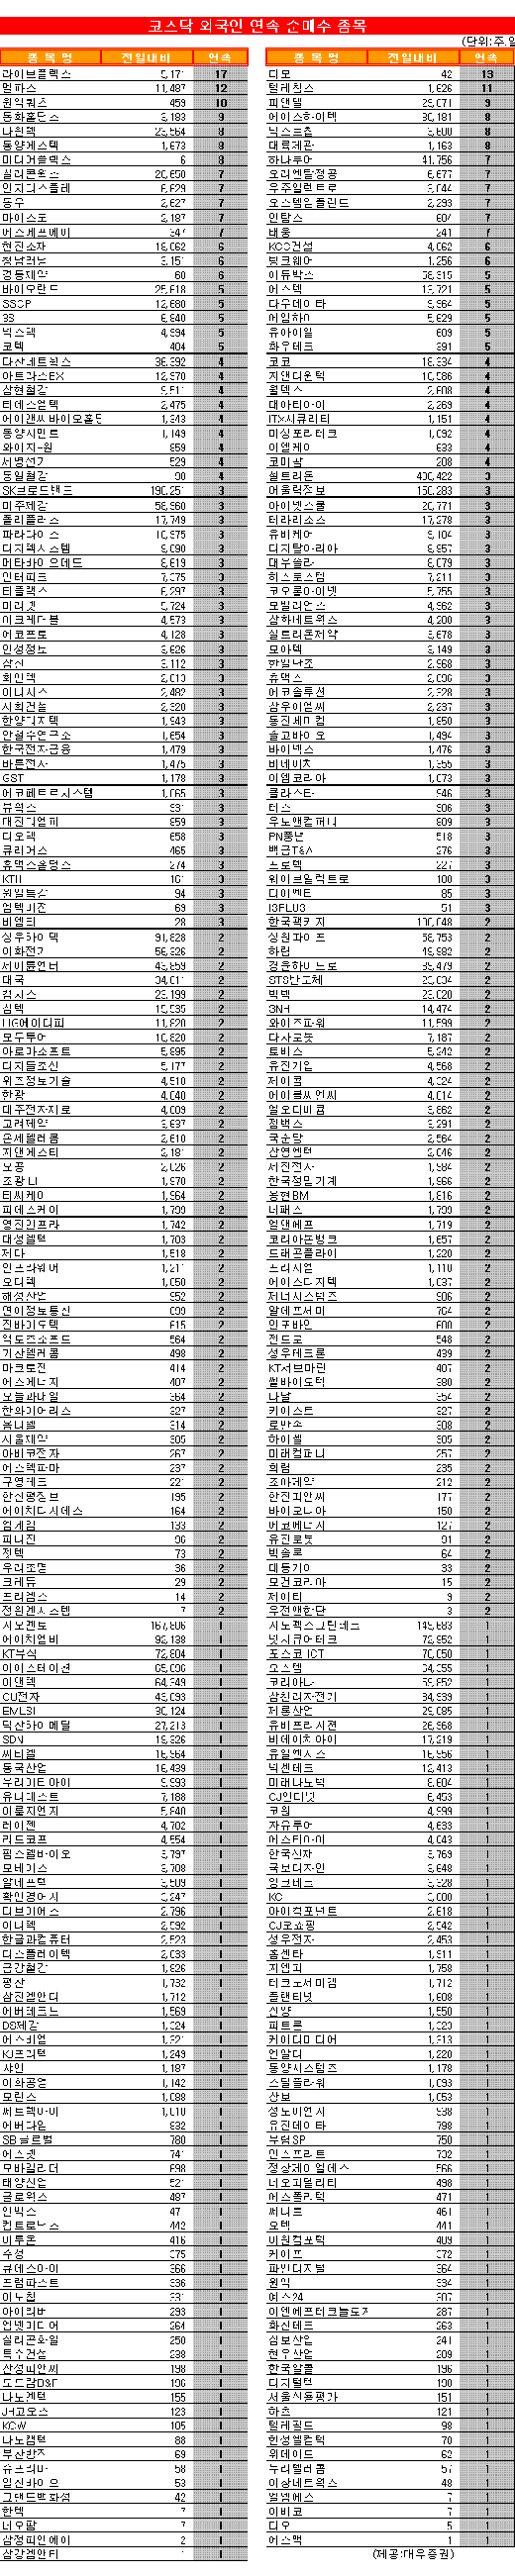 [표]코스닥 외국인 연속 순매수 종목-6일